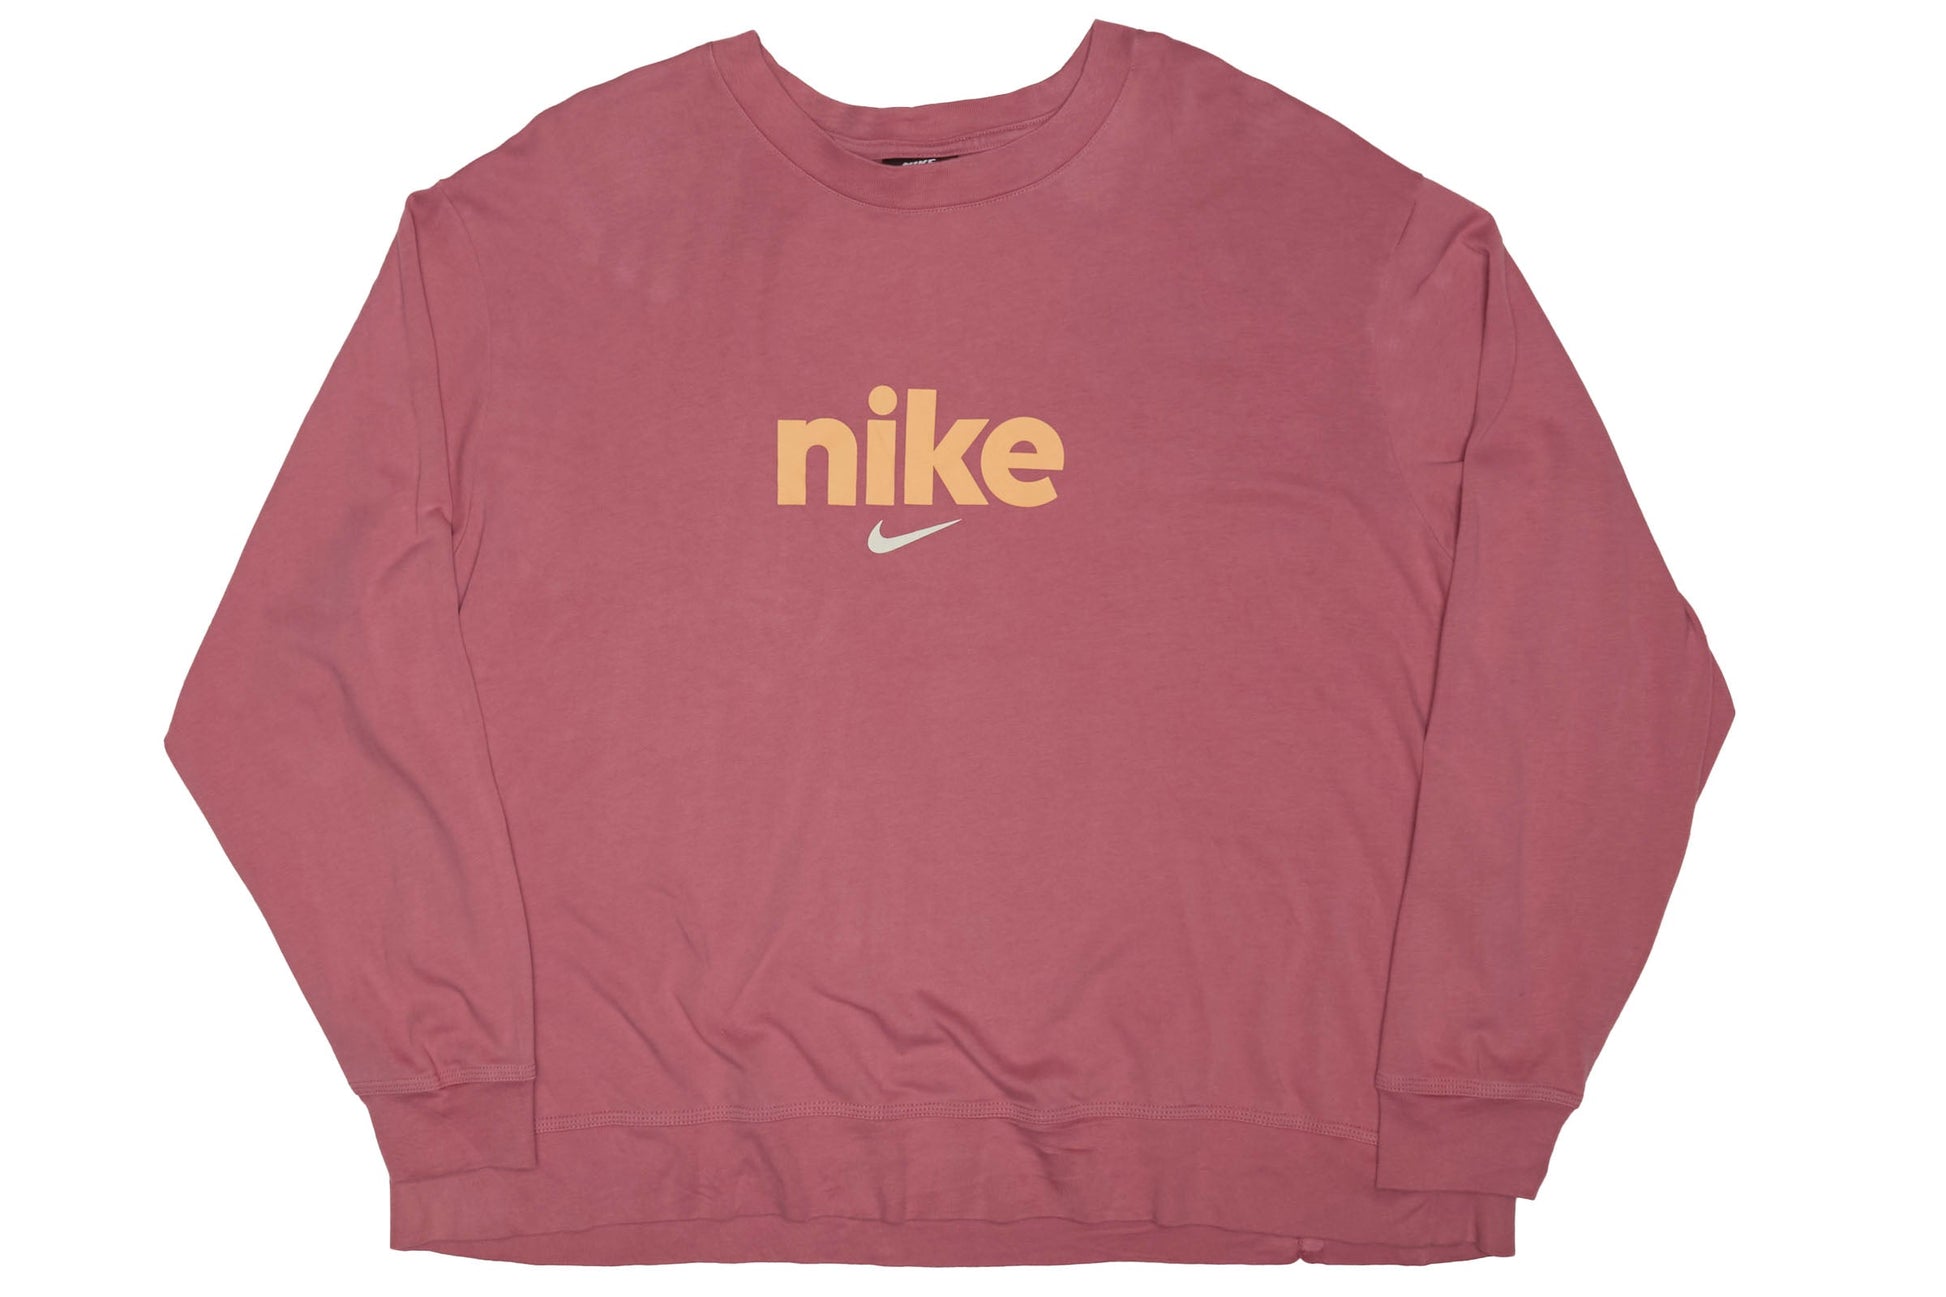 Womens Nike Crop Top Sweatshirt - M